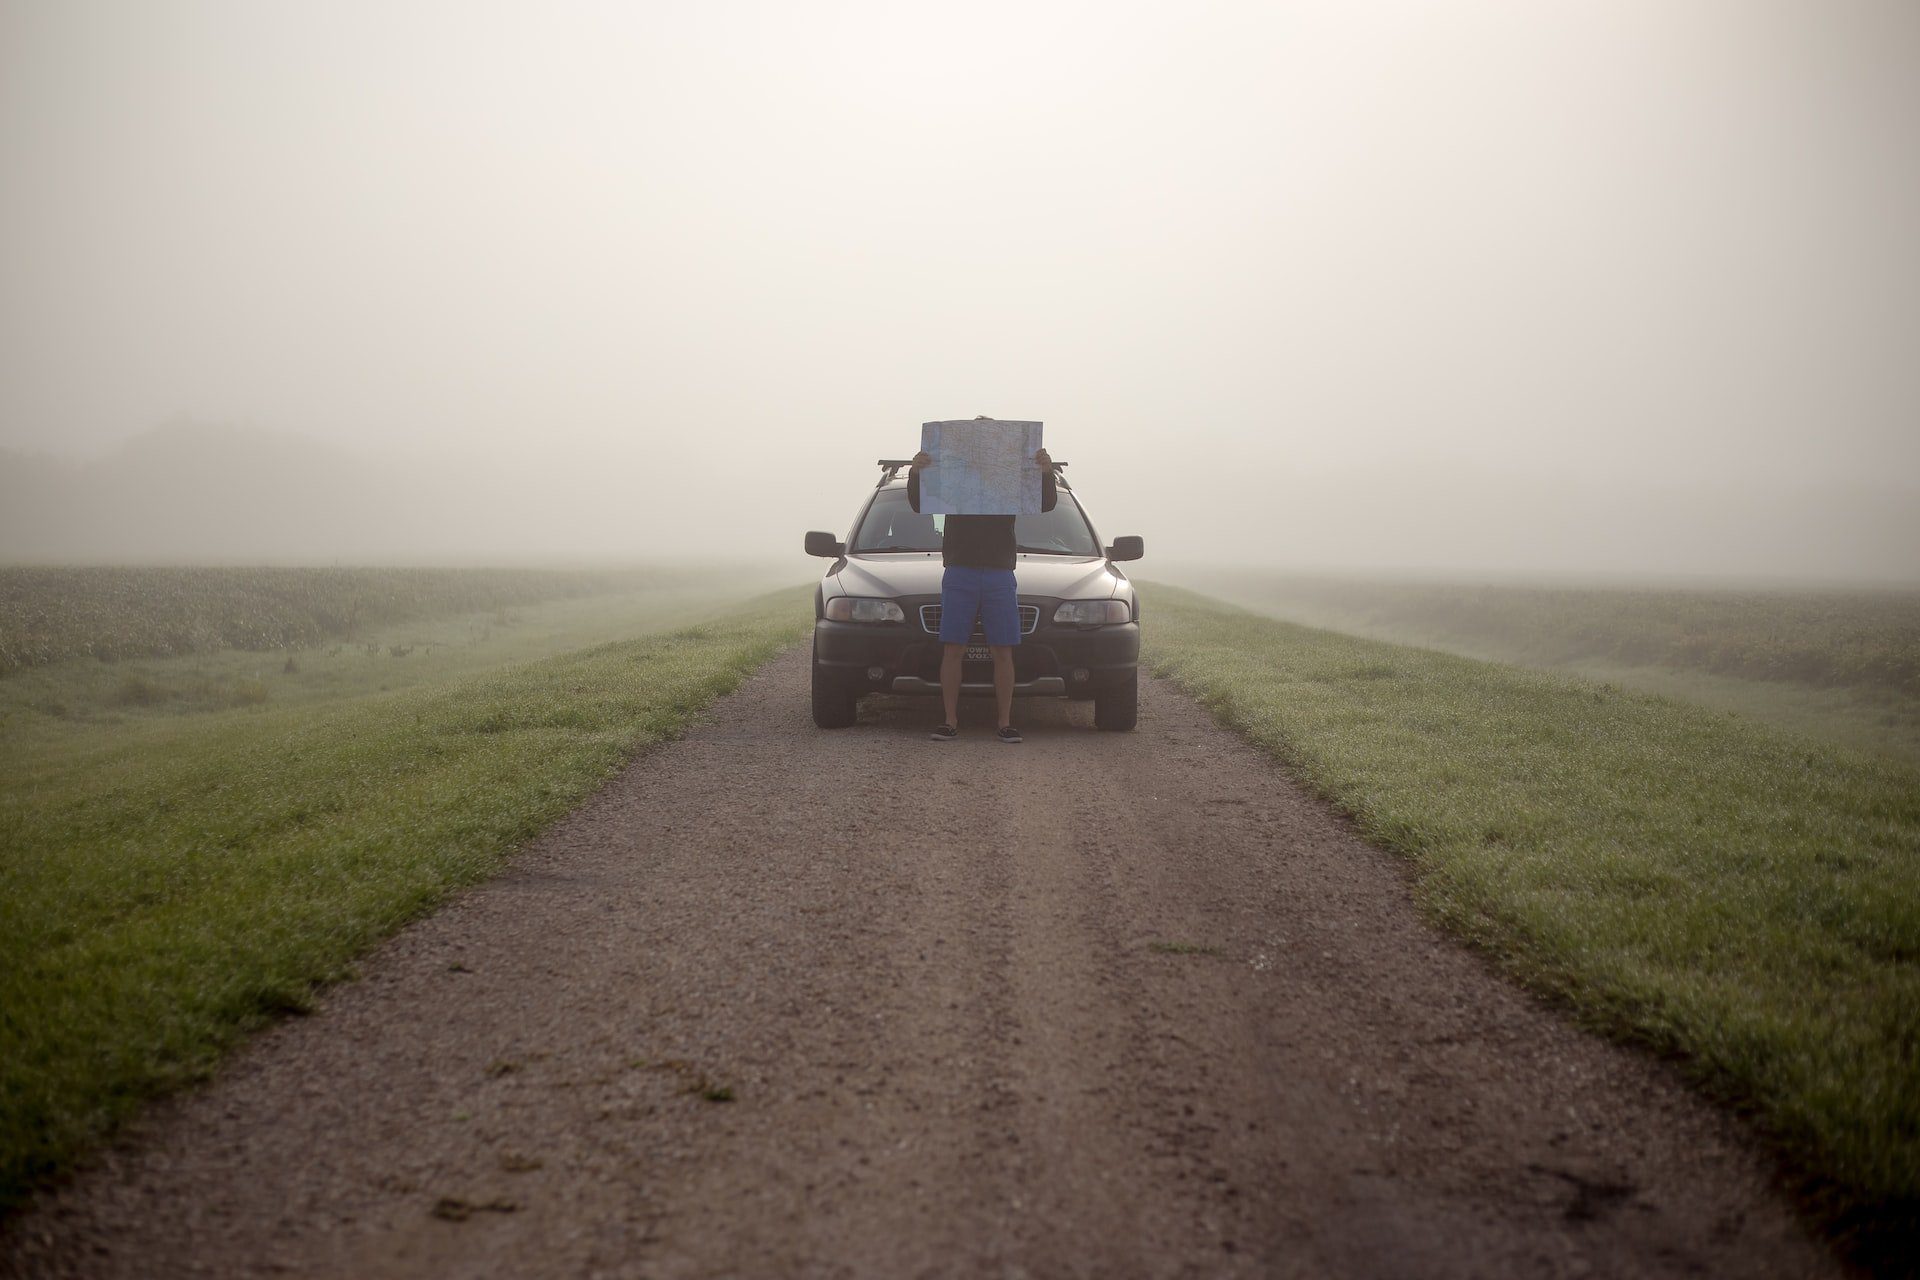 изображение человека, стоящего перед автомобилем на туманной дороге с поднятой картой